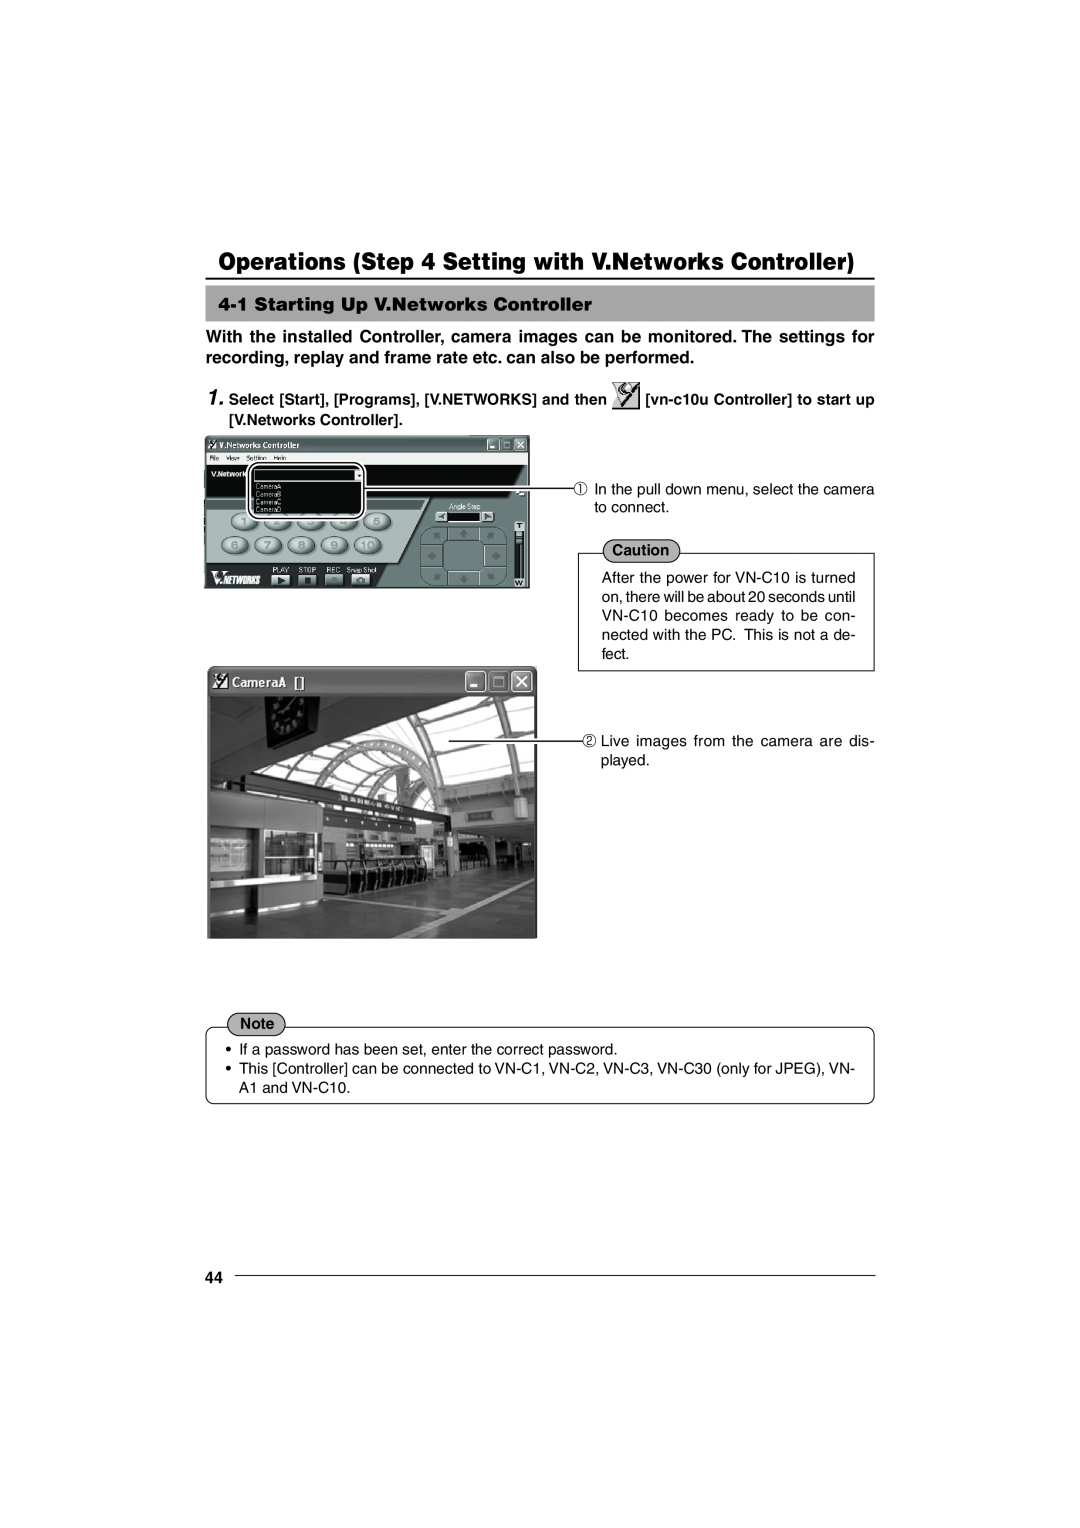 JVC VN-C10 manual 4-1Starting Up V.Networks Controller 